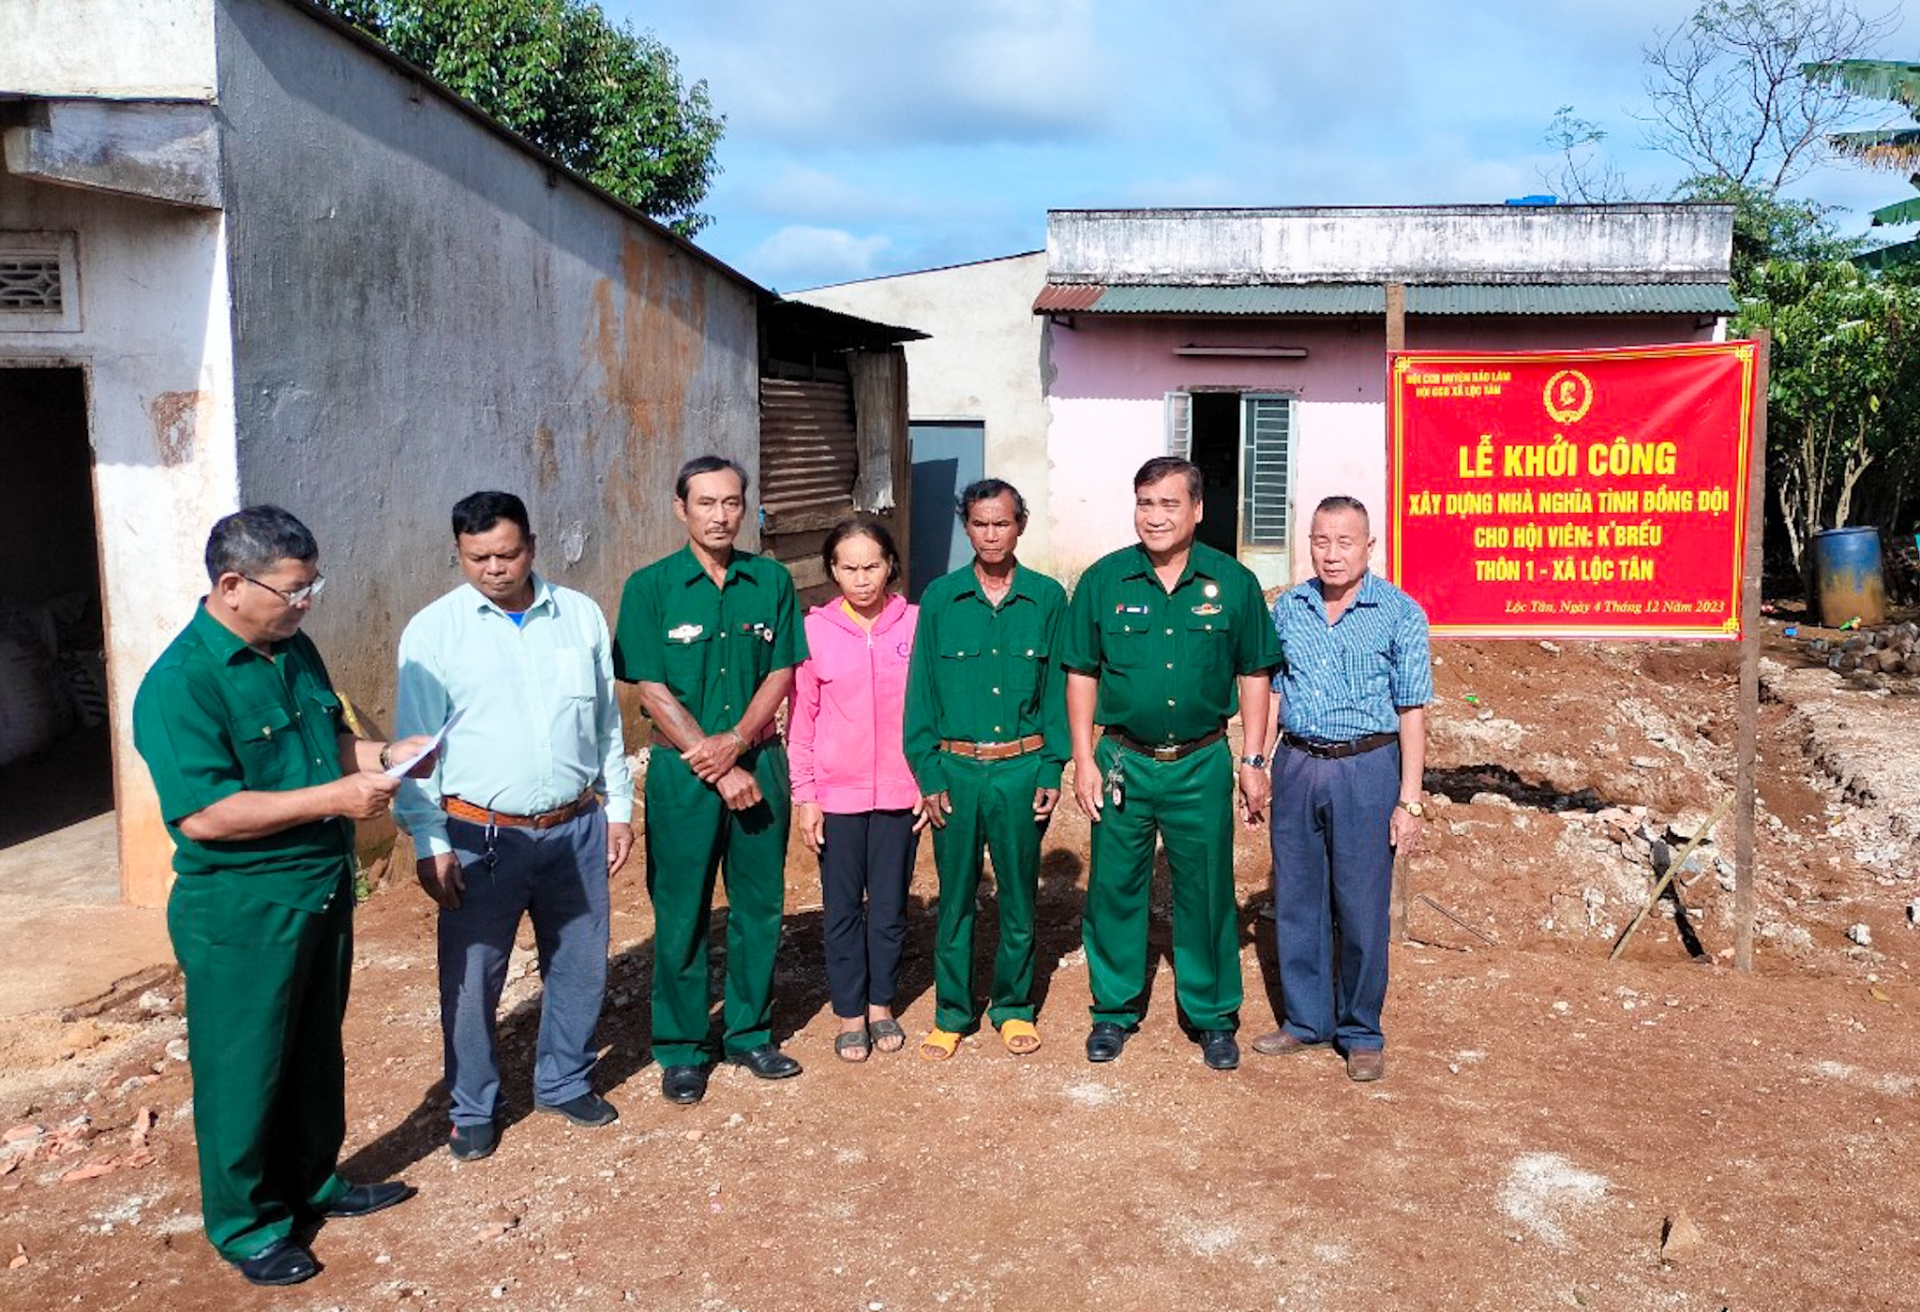 Hội CCB huyện Bảo Lâm khởi công xây dựng nhà ở cho CCB K’Brếu

